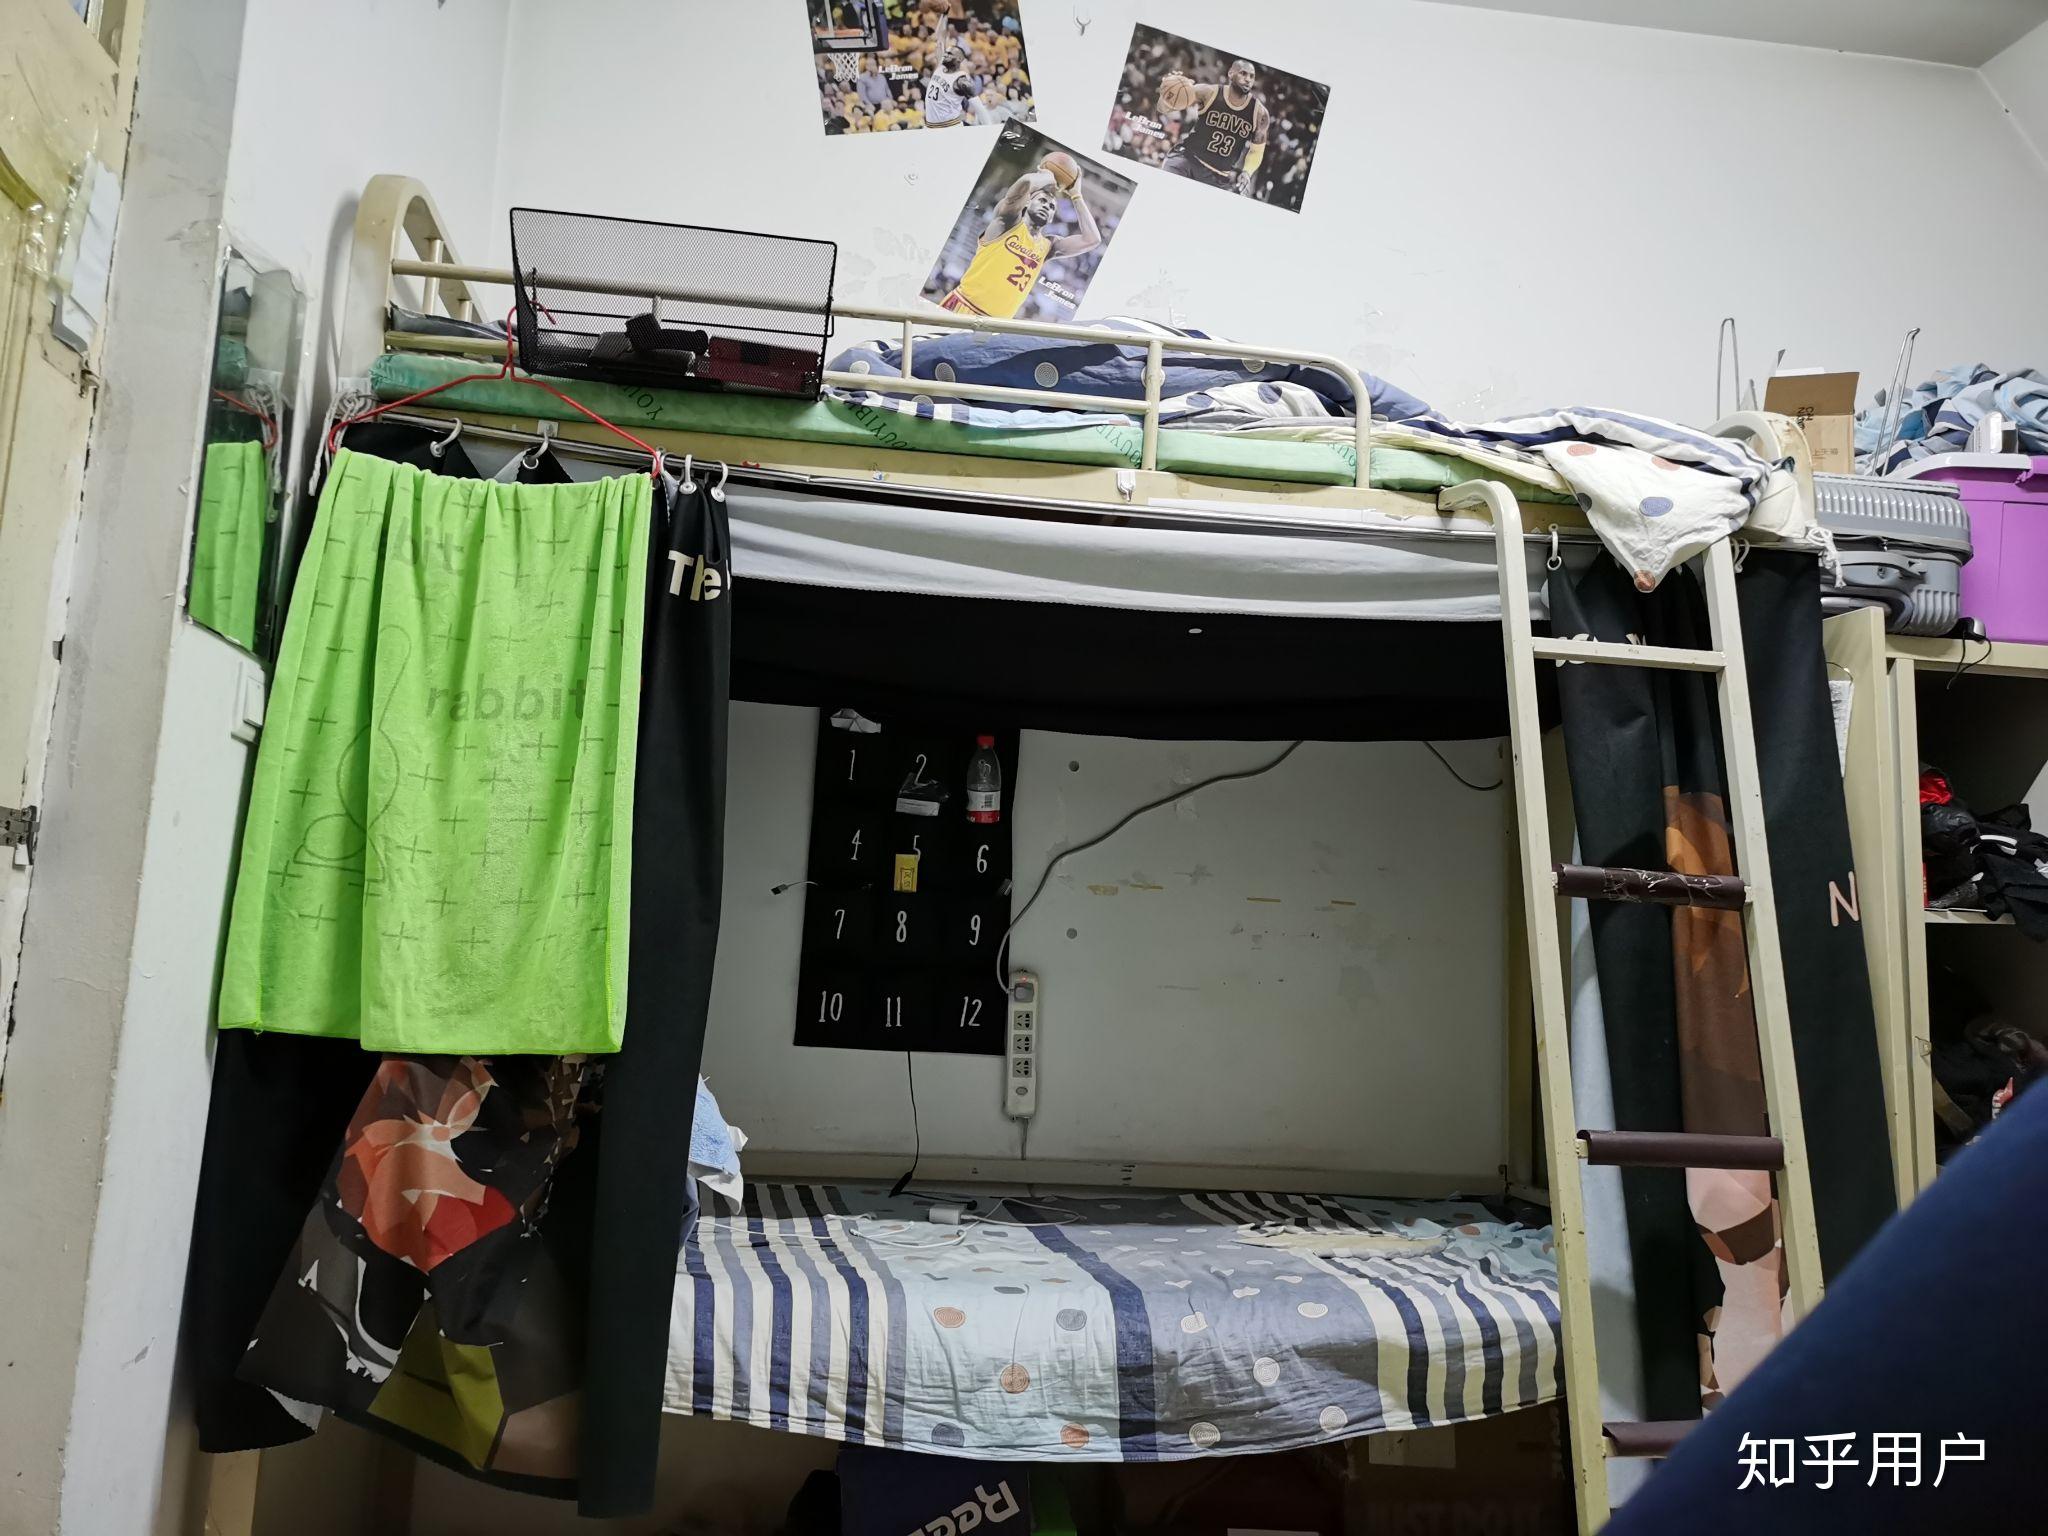 黑龙江科技大学的宿舍条件如何?校区内有哪些生活设施? 